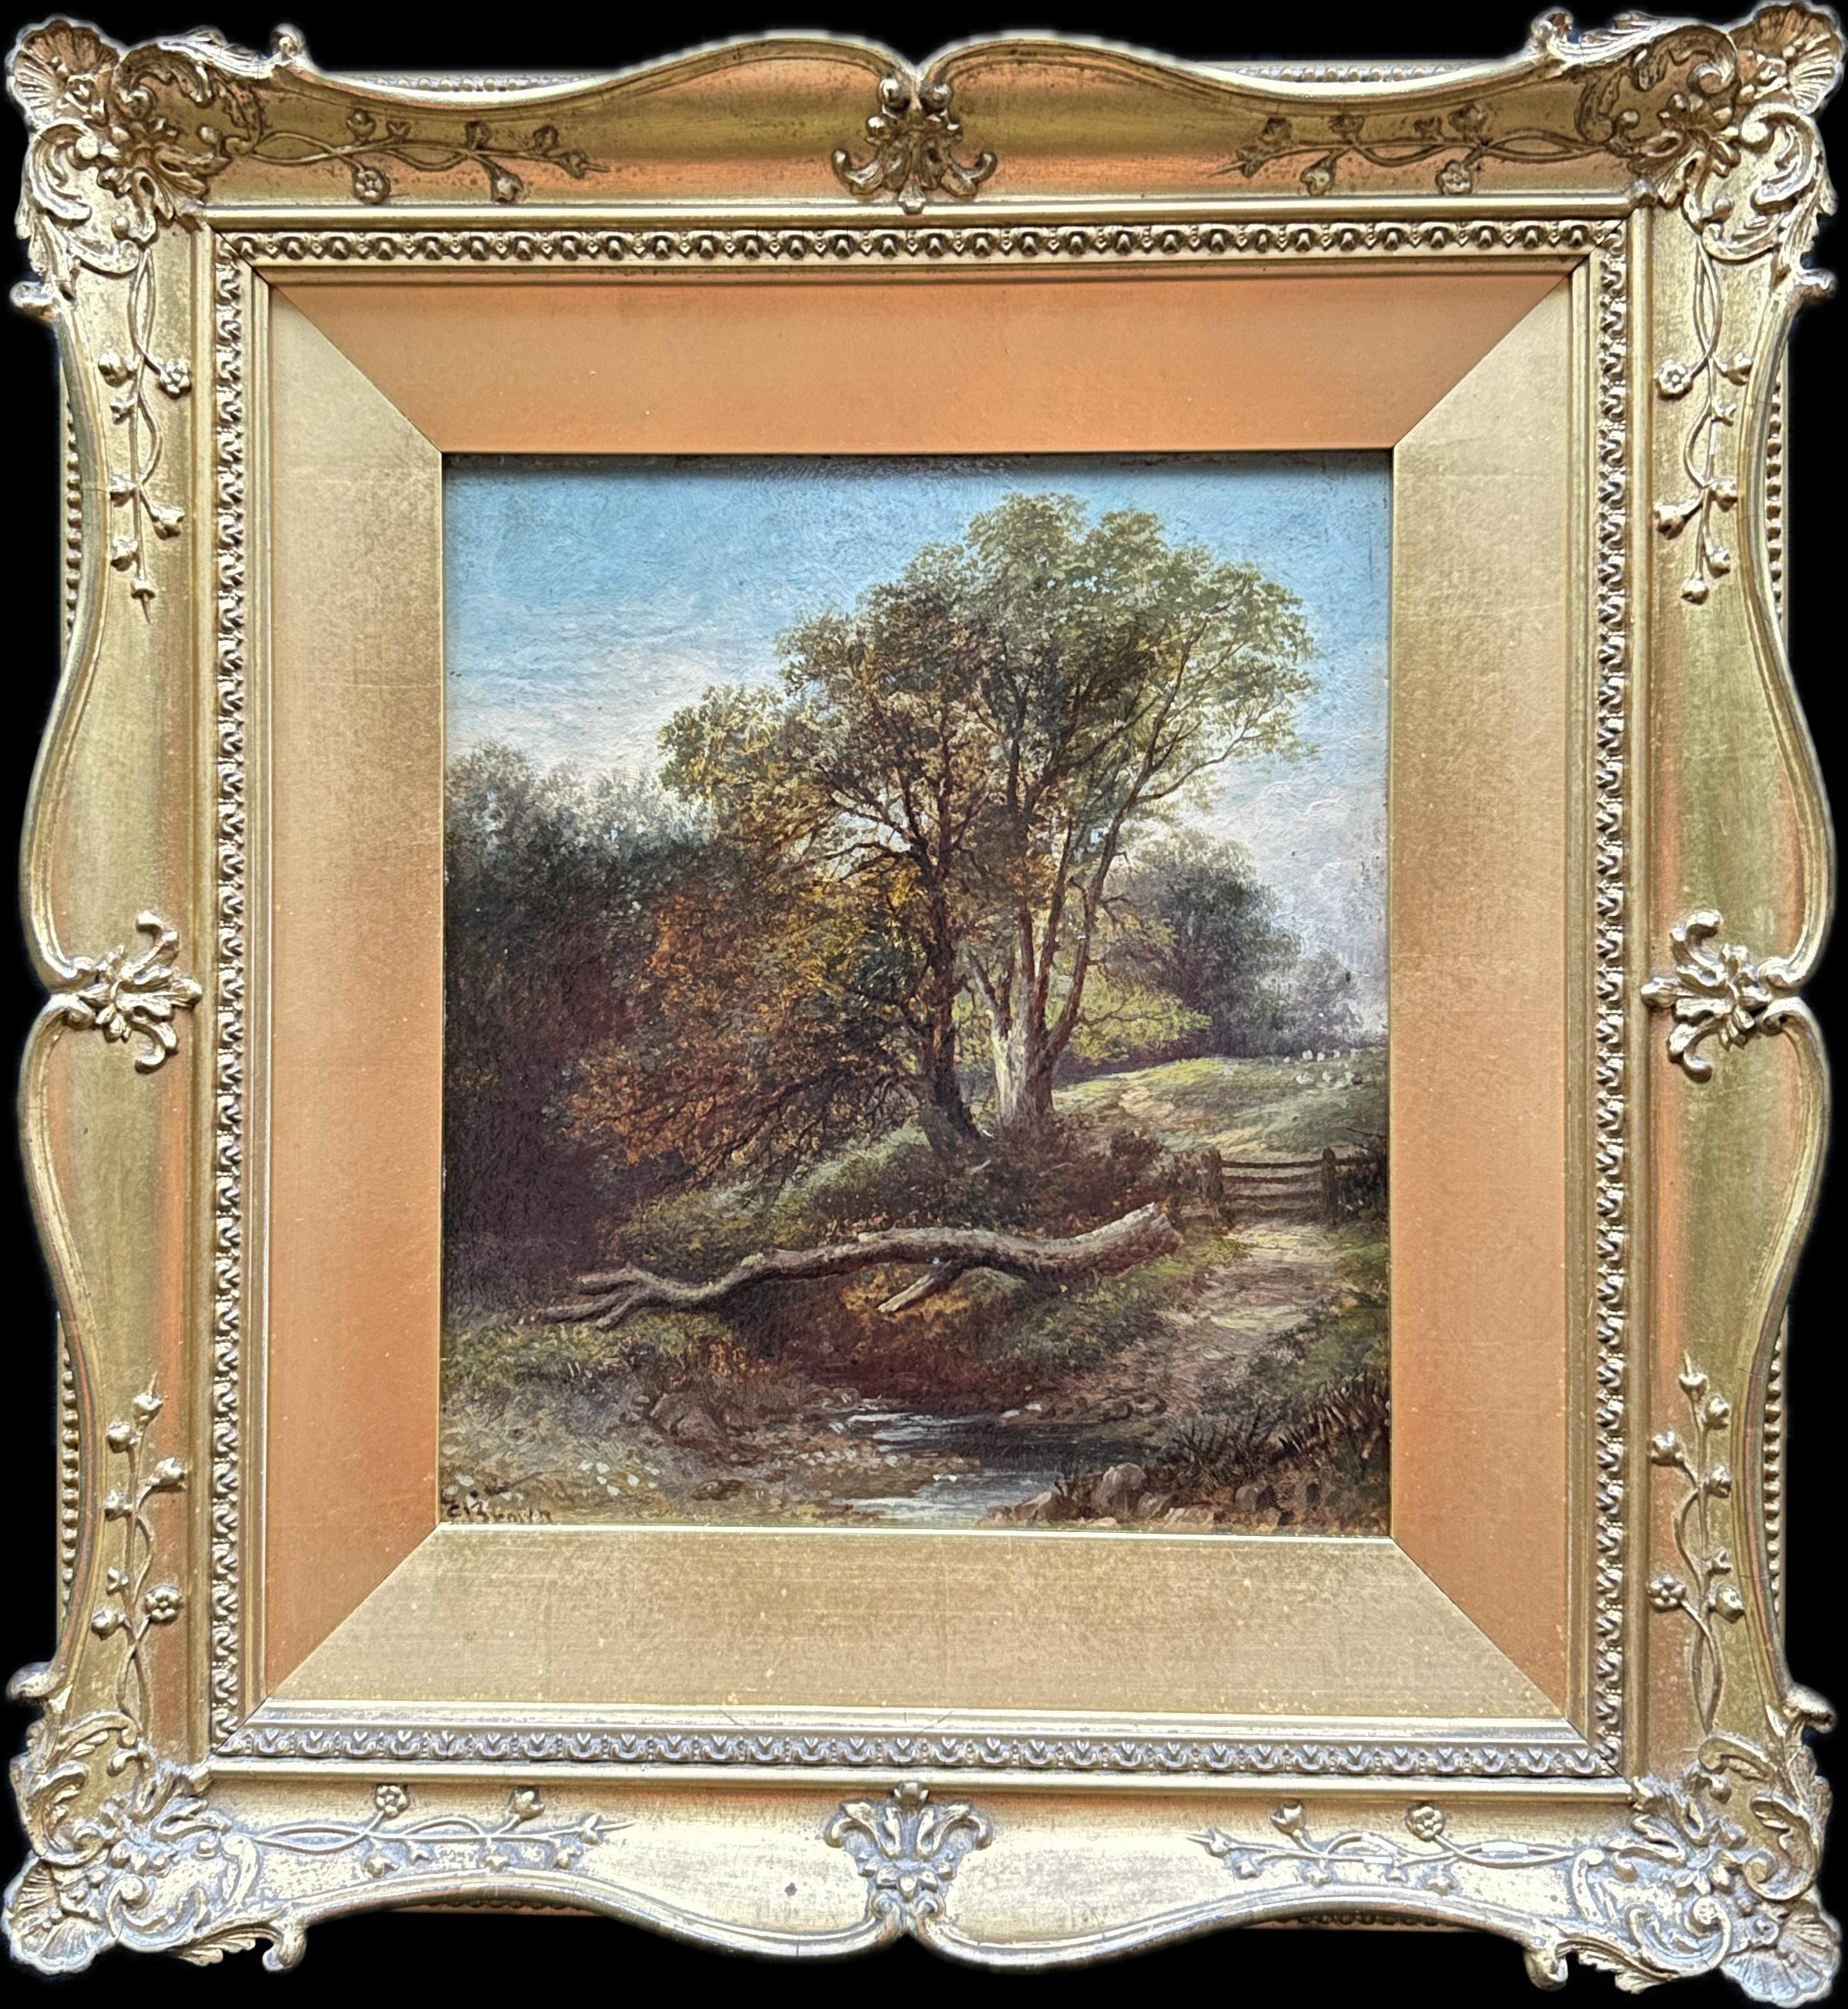 C. Brown Landscape Painting – Englische Landschaft des 19. Jahrhunderts mit Eichenbäumen, einem Fluss und Schafen auf einem Weg